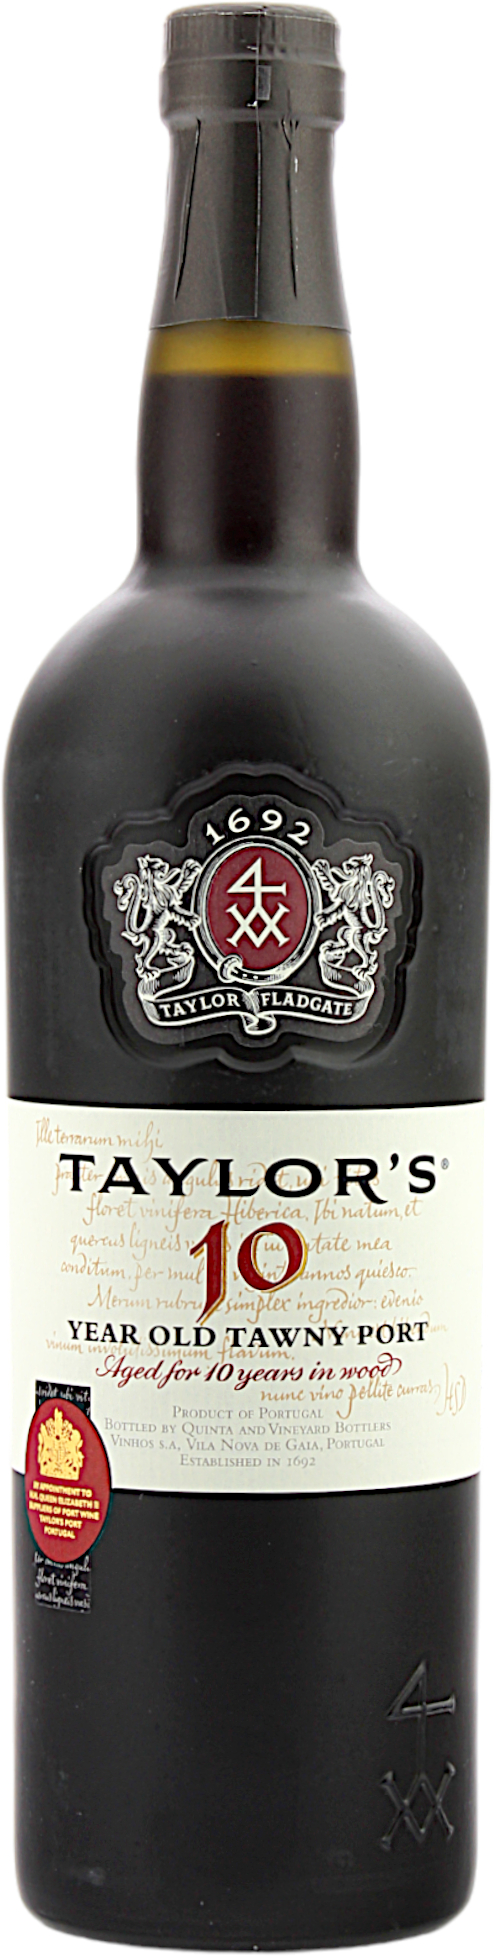 Taylor's Tawny Port 10 Jahre 20.0% 0,75l